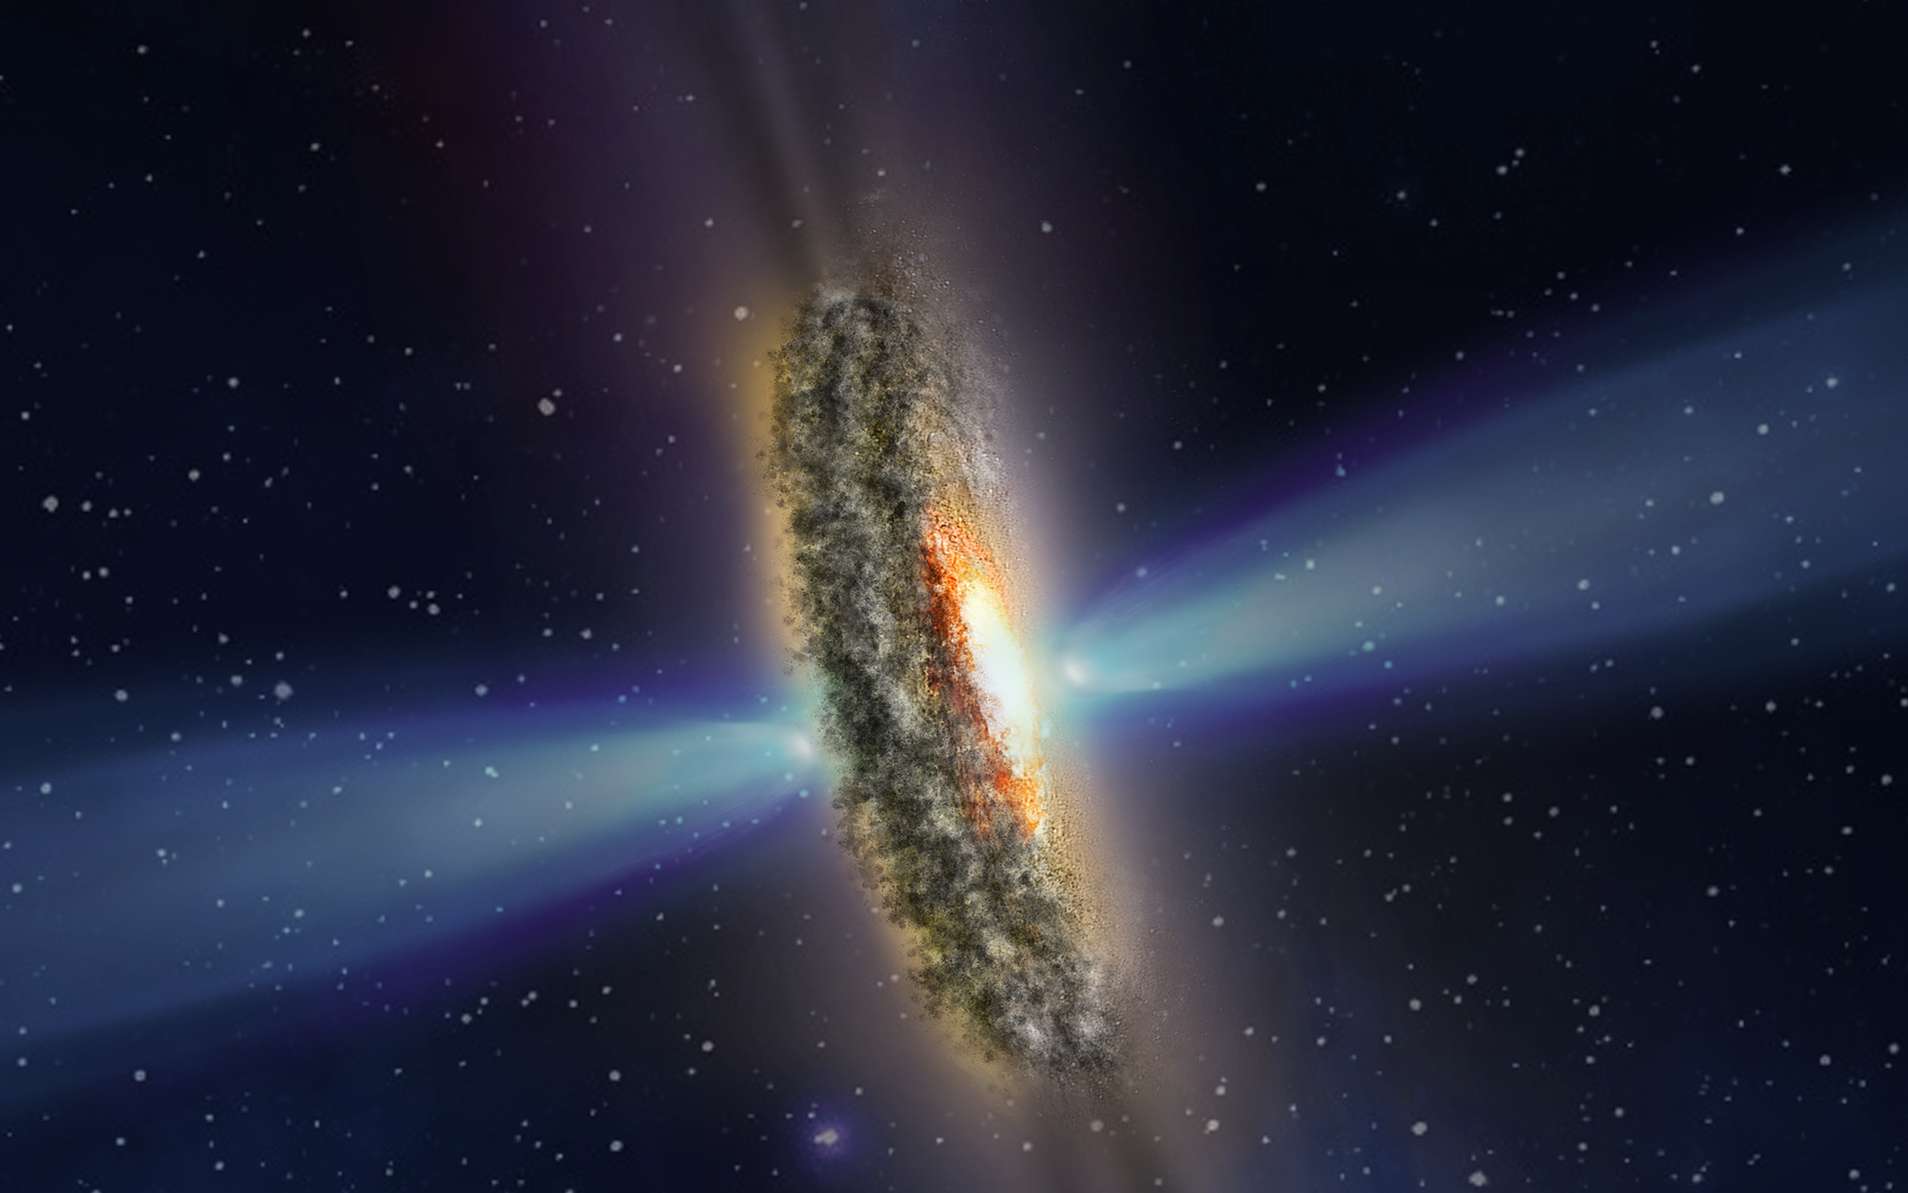 Cette illustration représente un disque poussiéreux entourant un trou noir caché à l'intérieur du disque, entouré de gaz surchauffé — la source du noyau brillant. Le disque est perpendiculaire à de puissants jets de plasma à grande vitesse. © Nasa, ESA, STScI and Z. Levy (STScI)